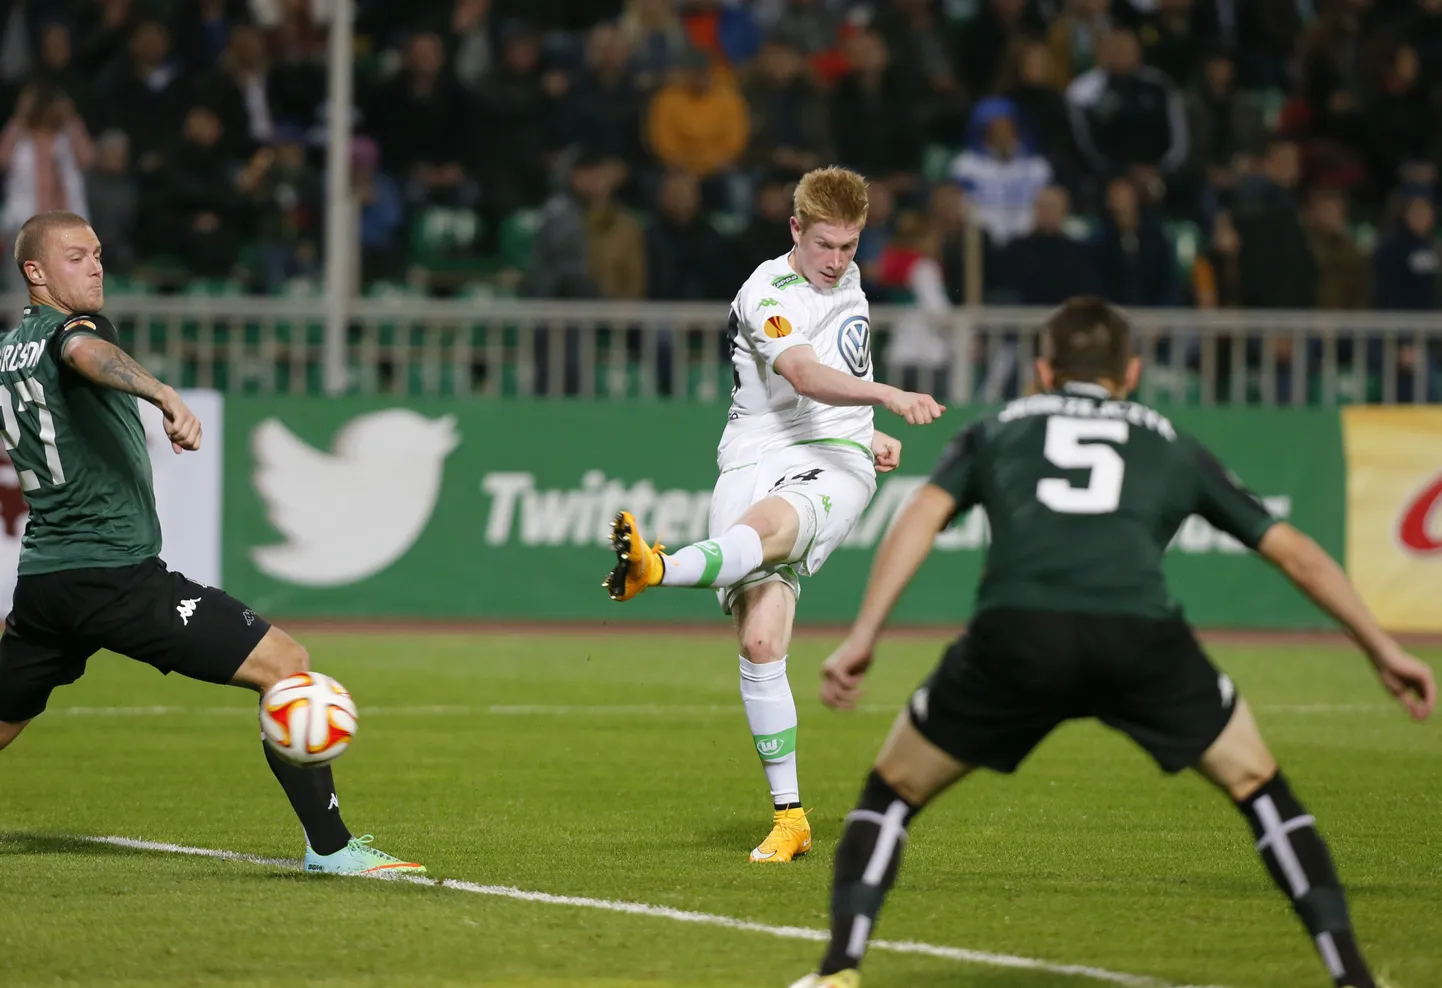 Момент матча "Краснодар" - "Вольфсбург". После этого удара полузащитника гостей Кевина де Брюйне счет стал 2:0 в пользу гостей.